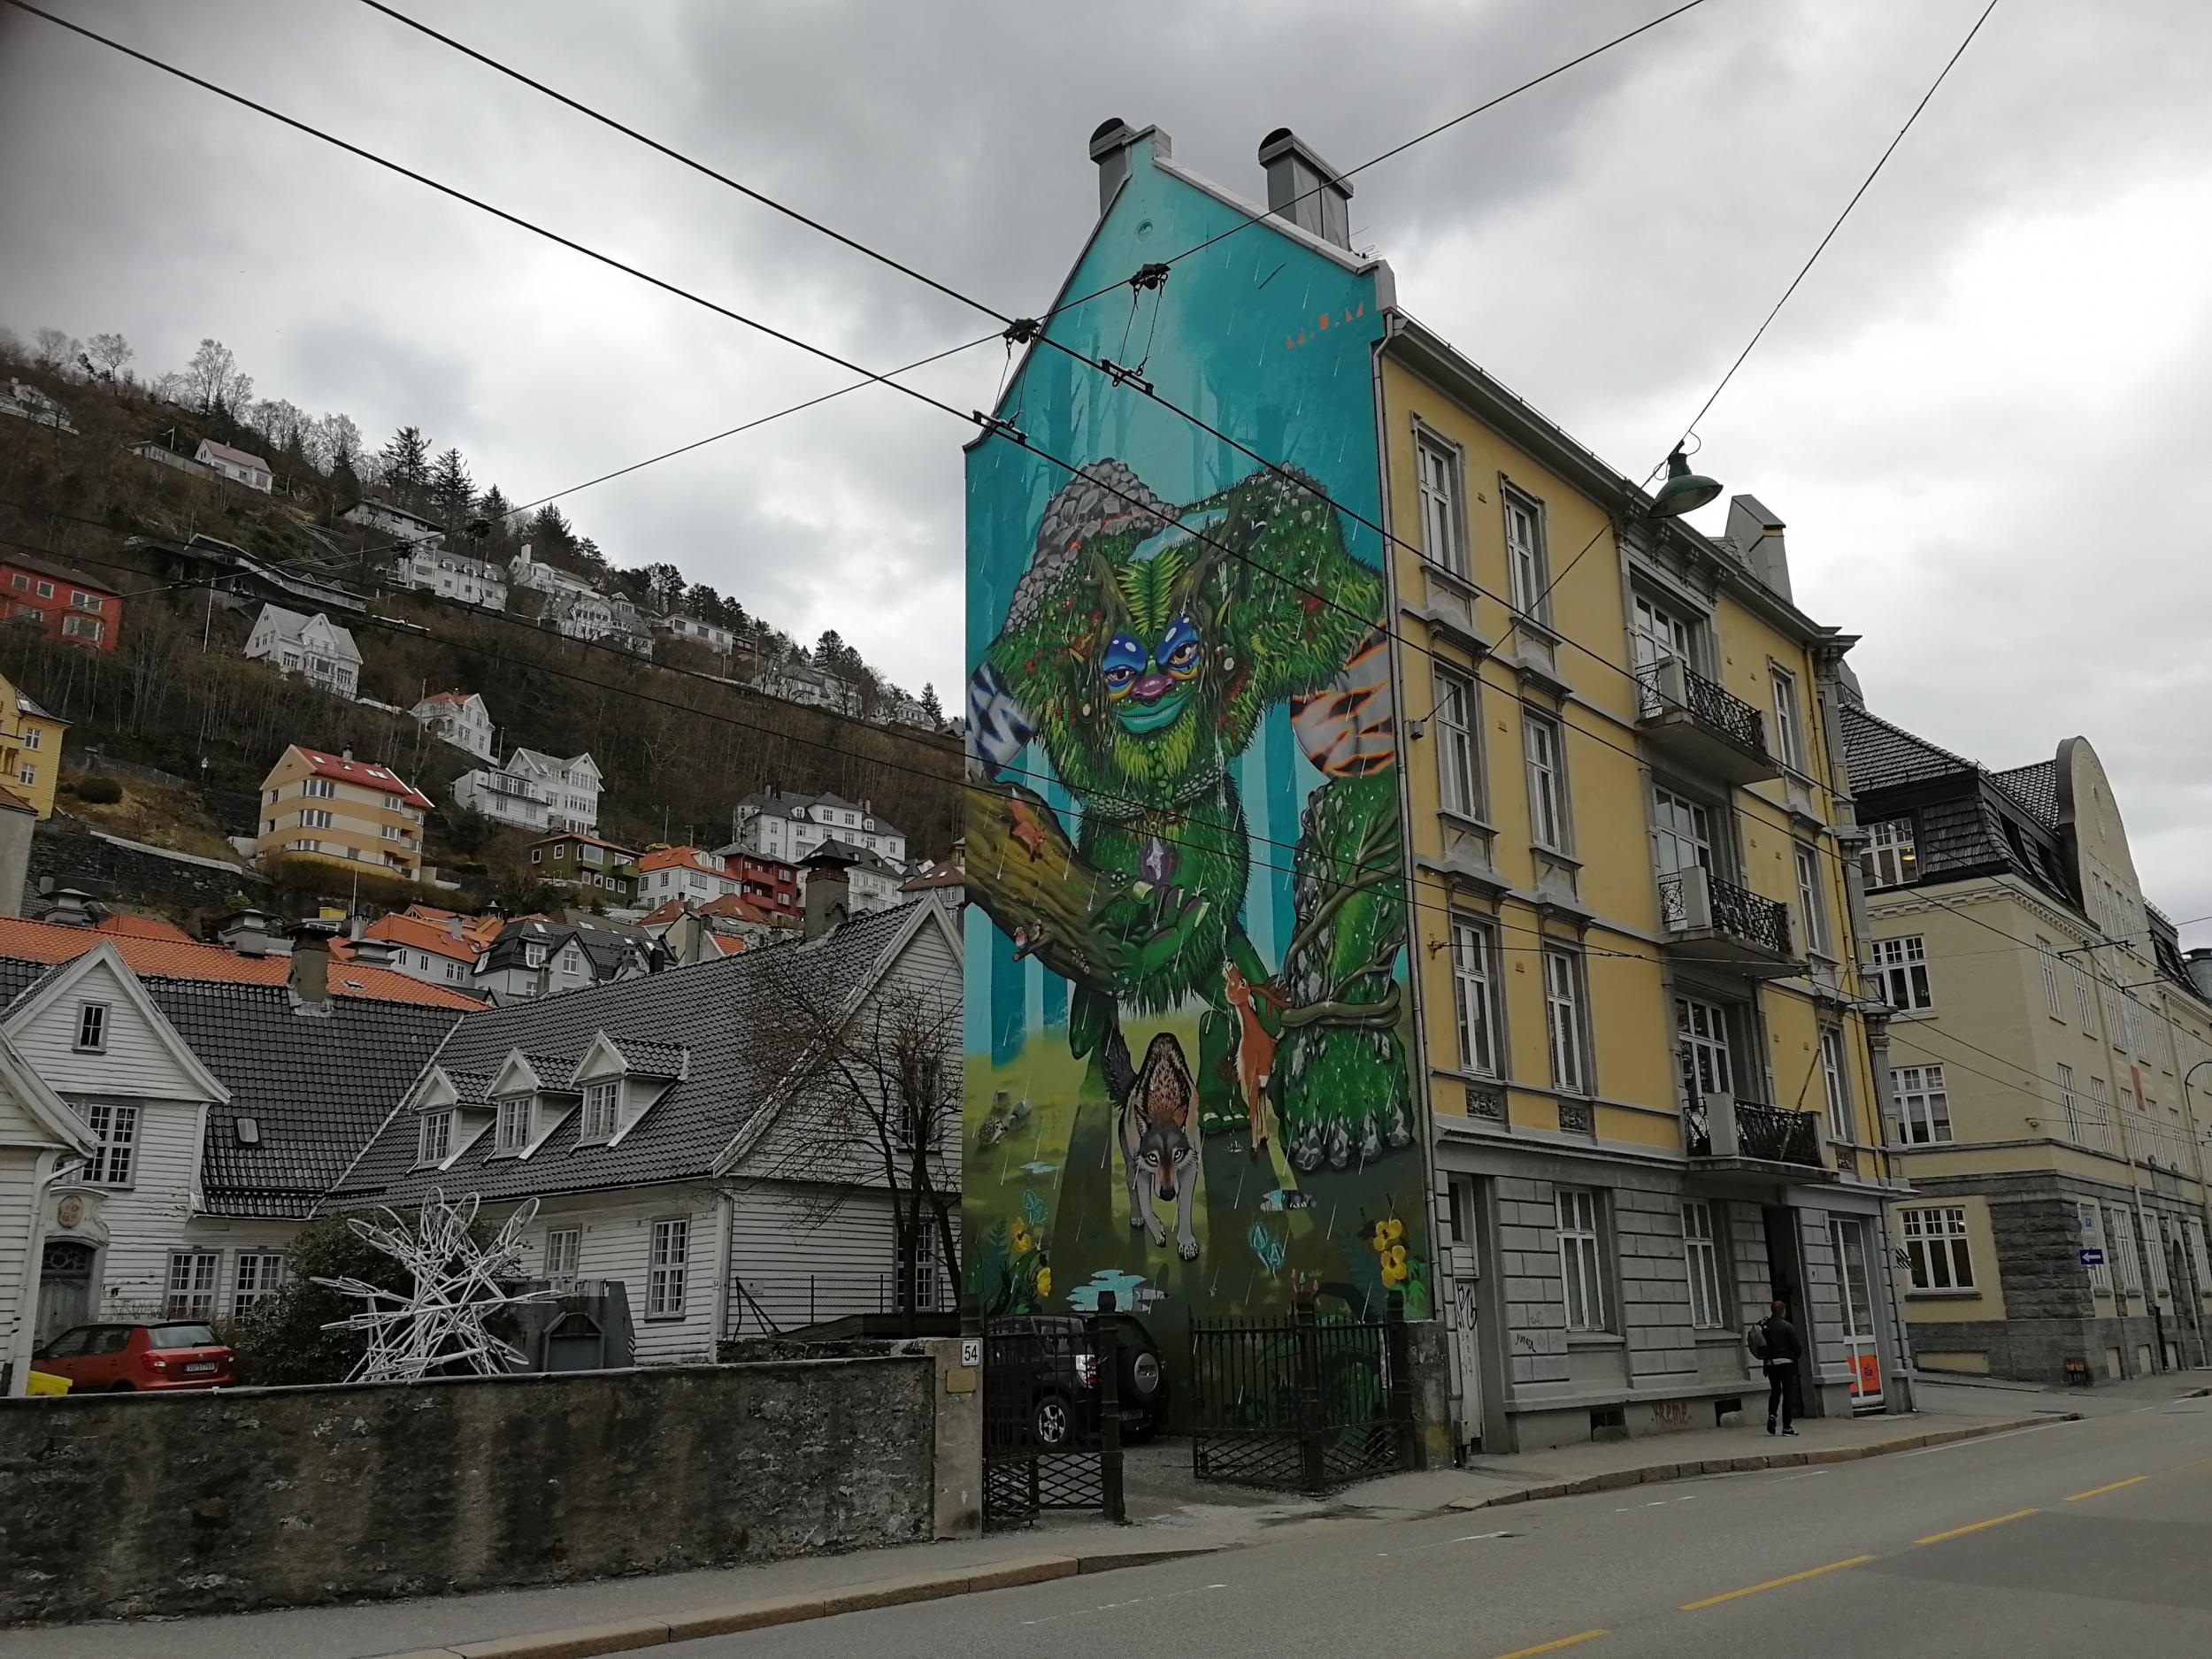 Bergen has a thriving street art scene